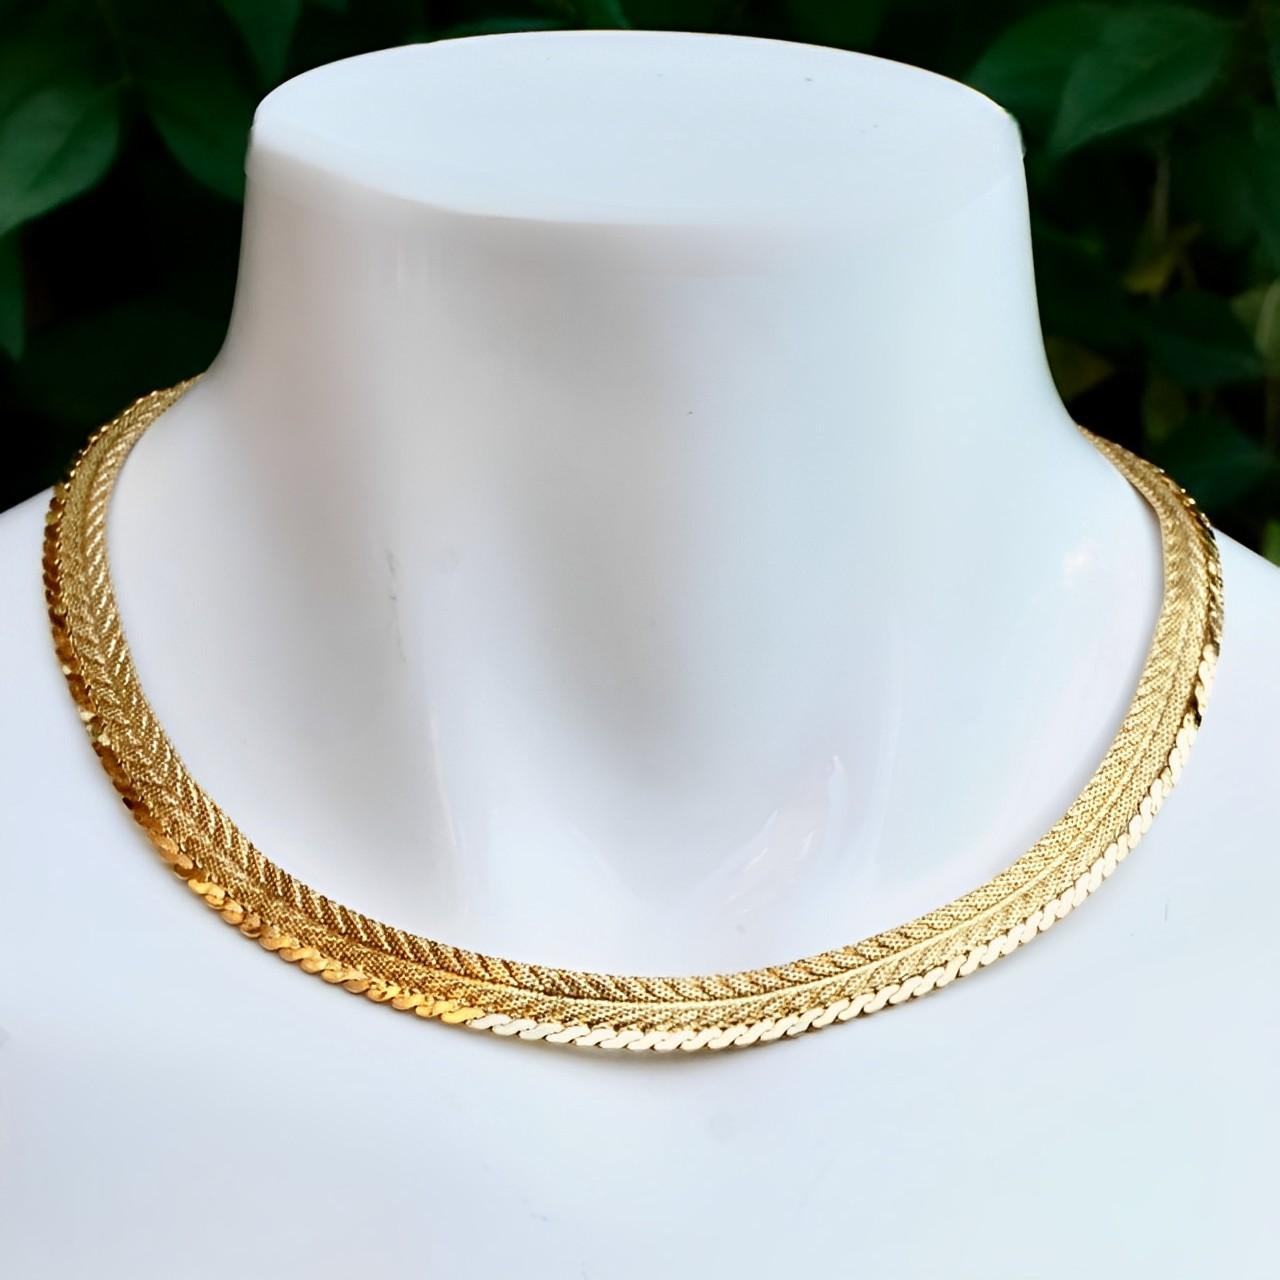 Wunderschöne, glänzend vergoldete Netz-Halskette im Chevron-Design mit einer glänzenden Serpentinenkette als Abschluss. Länge ca. 38,5 cm / 15,1 Inch plus eine Verlängerungskette von 5,5 cm / 2 Inch, bei einer Breite von 9 mm / .35 Inch. Die